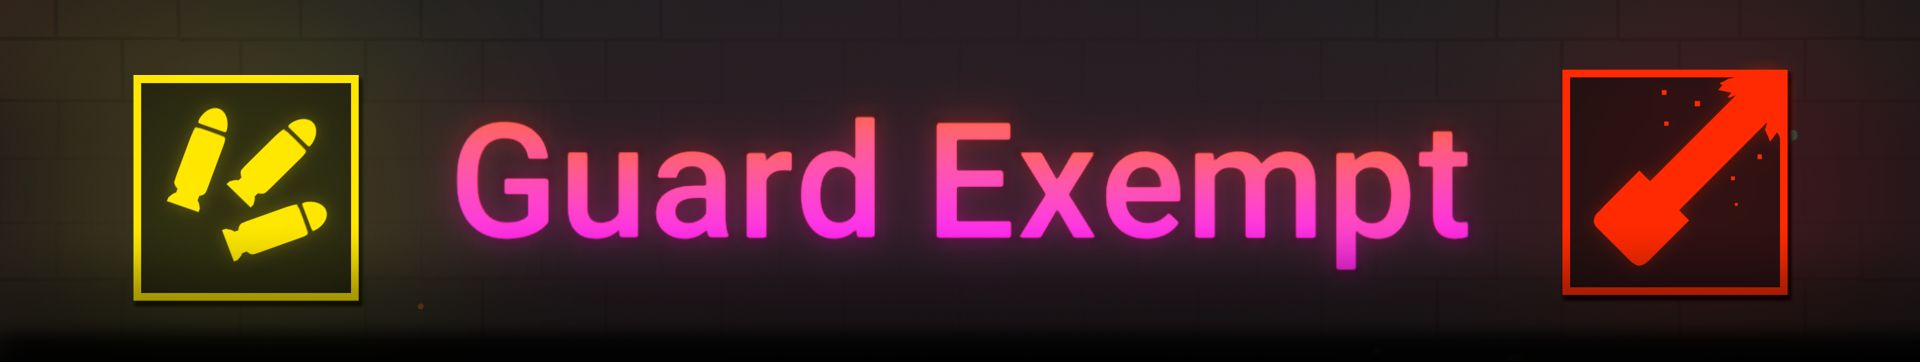 Guard Exempt